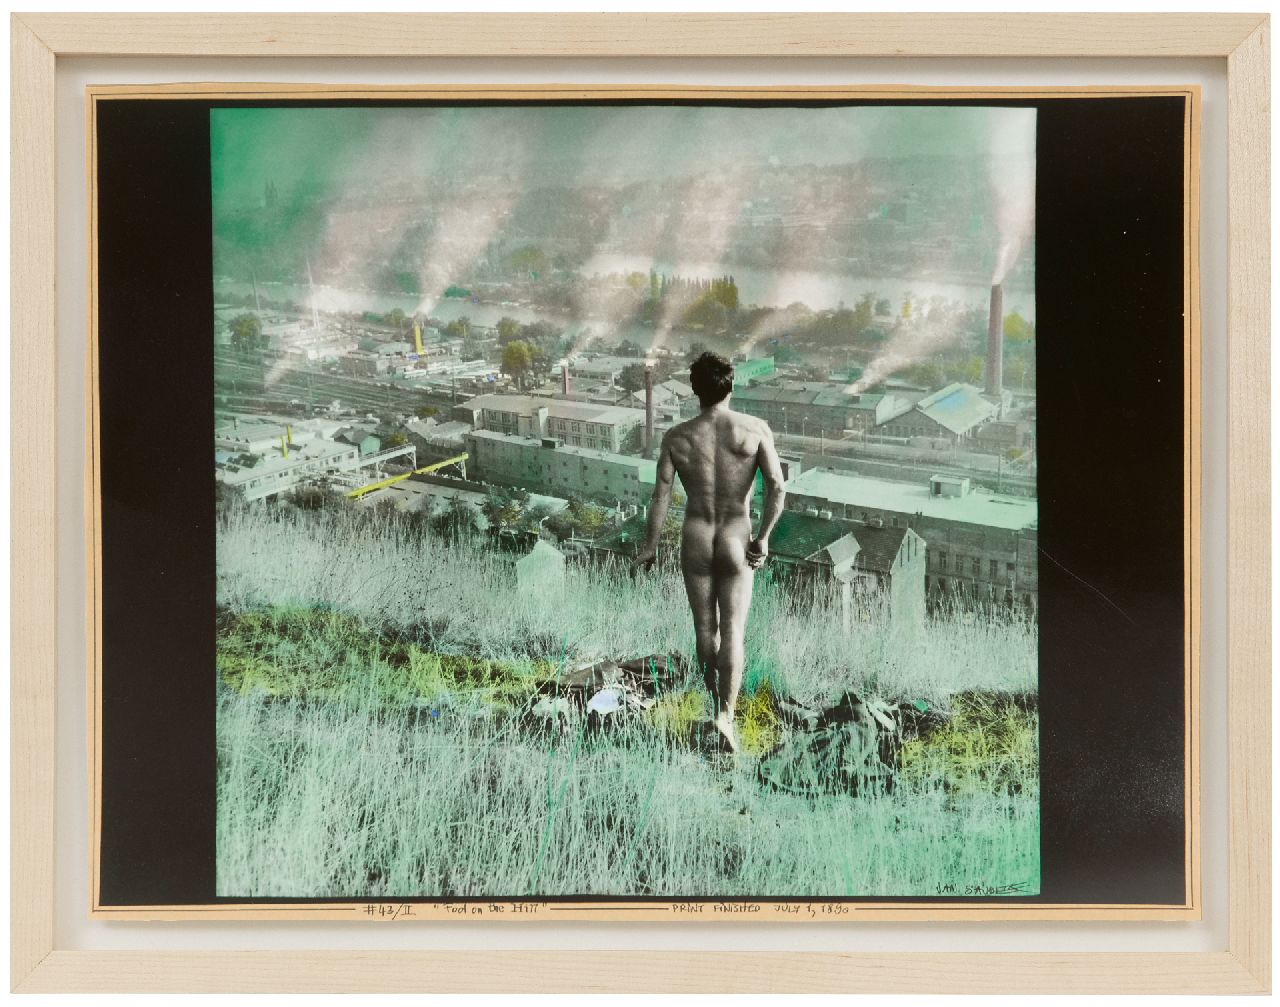 Saudek J.  | Jan Saudek | Grafiek te koop aangeboden | Fool on the hill, foto, zilvergelatinedruk, handgekleurd 29,6 x 39,8 cm, gesigneerd rechtsonder en te dateren 1984